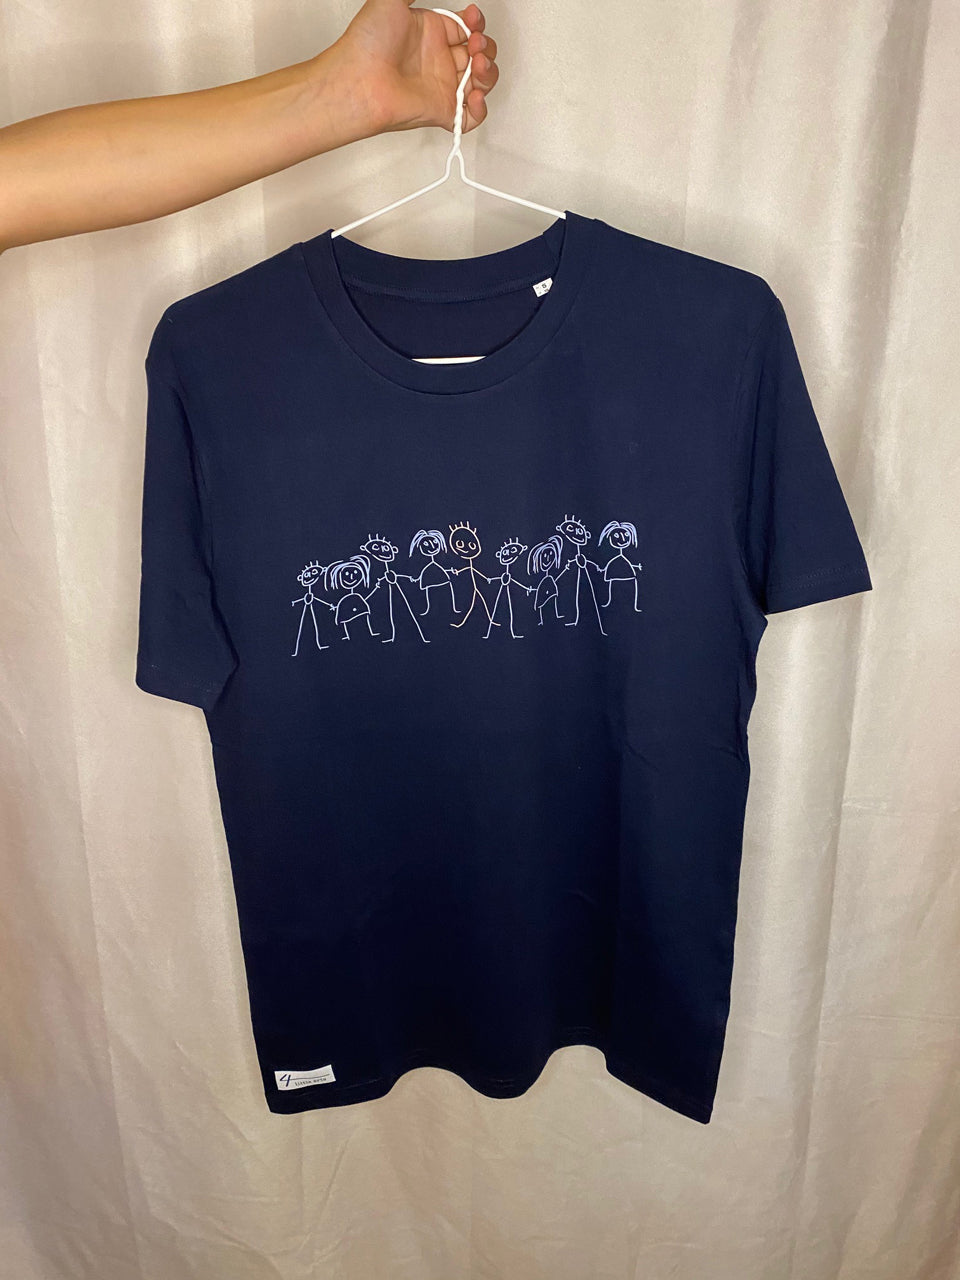 Dunkelblaues Unisex-T-Shirt mit dem Print 'Inklusion' in hellen Farben.